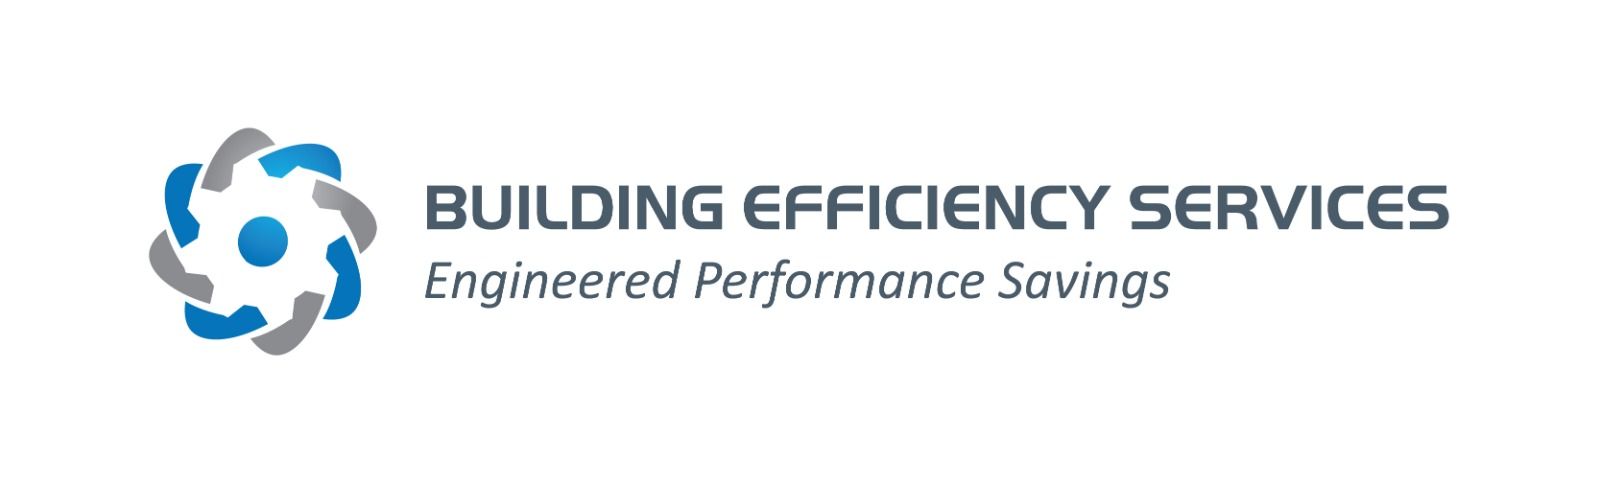 Building Efficiency Services